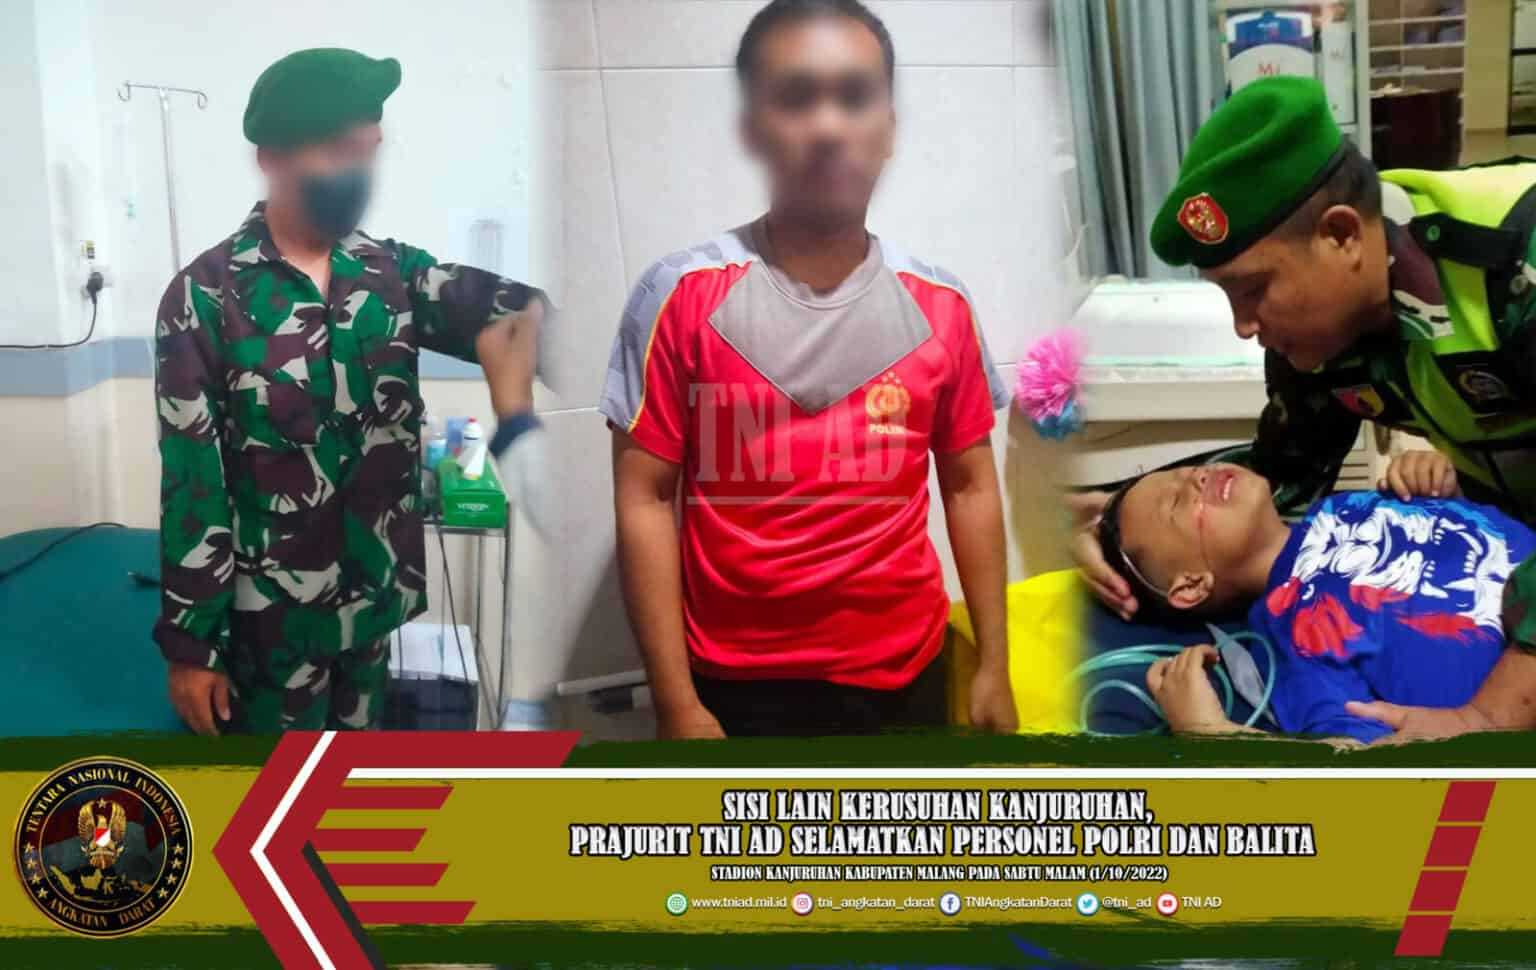 Kisah Prajurit TNI AD Selamatkan Personel Polri dan Balita yang Sembunyi di RS karena Dikepung Massa Kanjuruhan